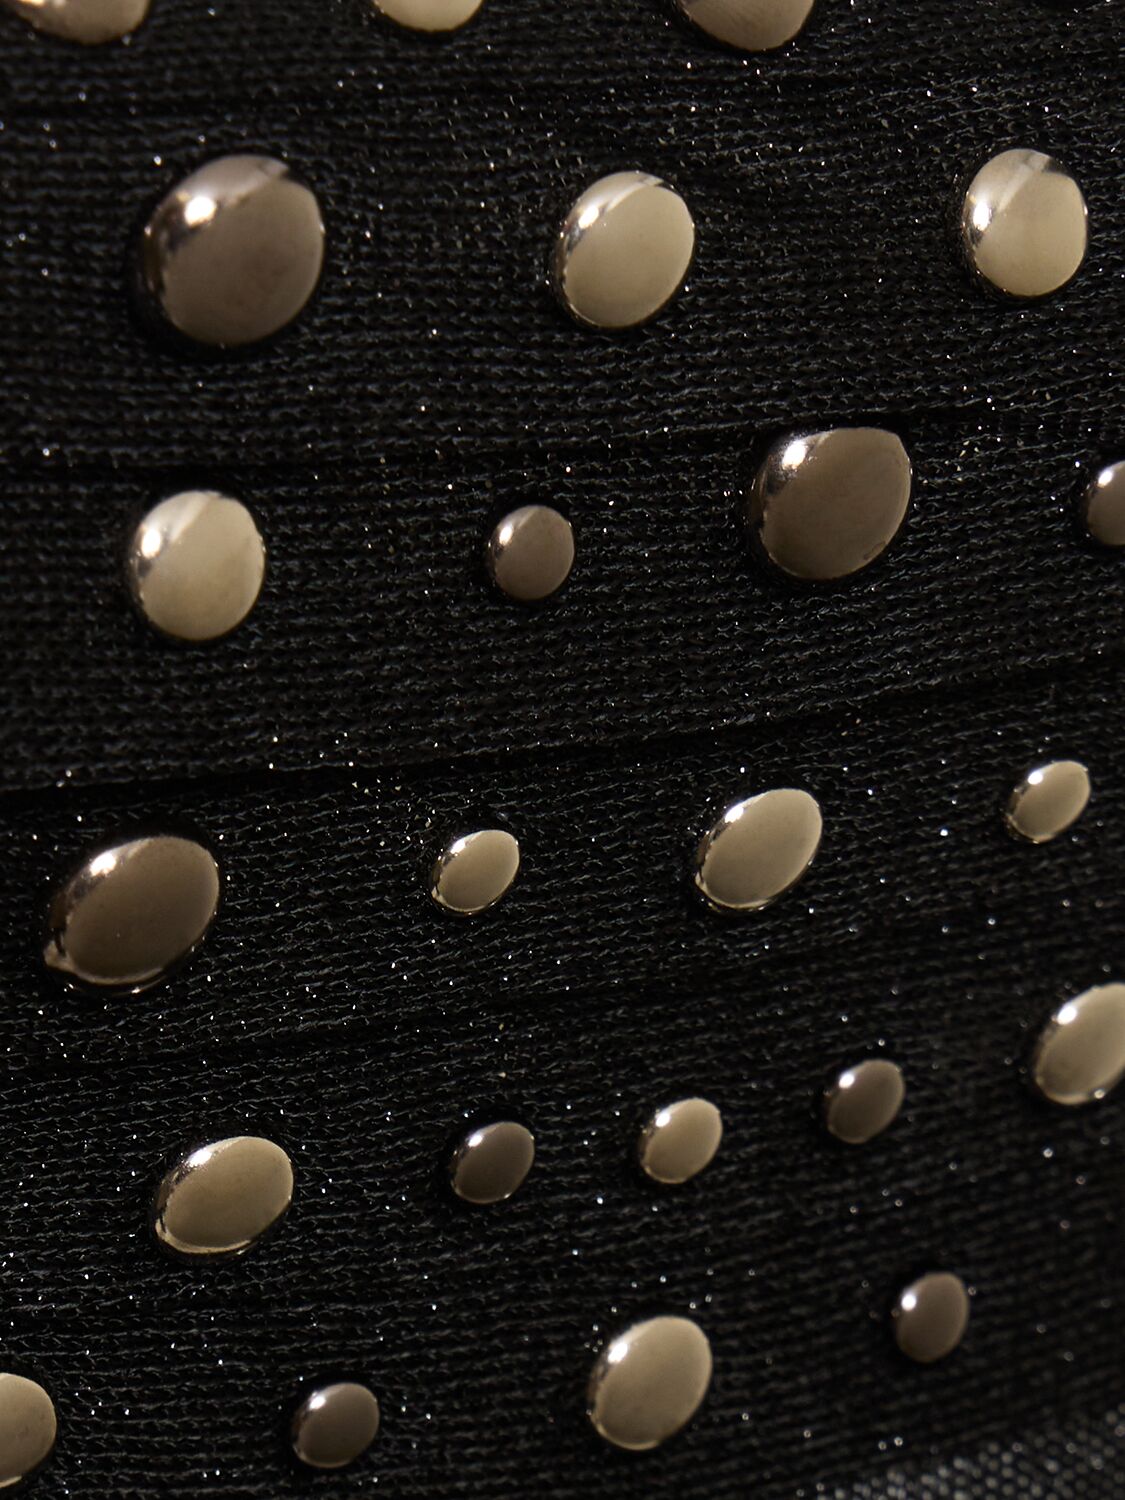 Shop Alessandra Rich Lurex Knit Midi Dress W/ Crystals In Black